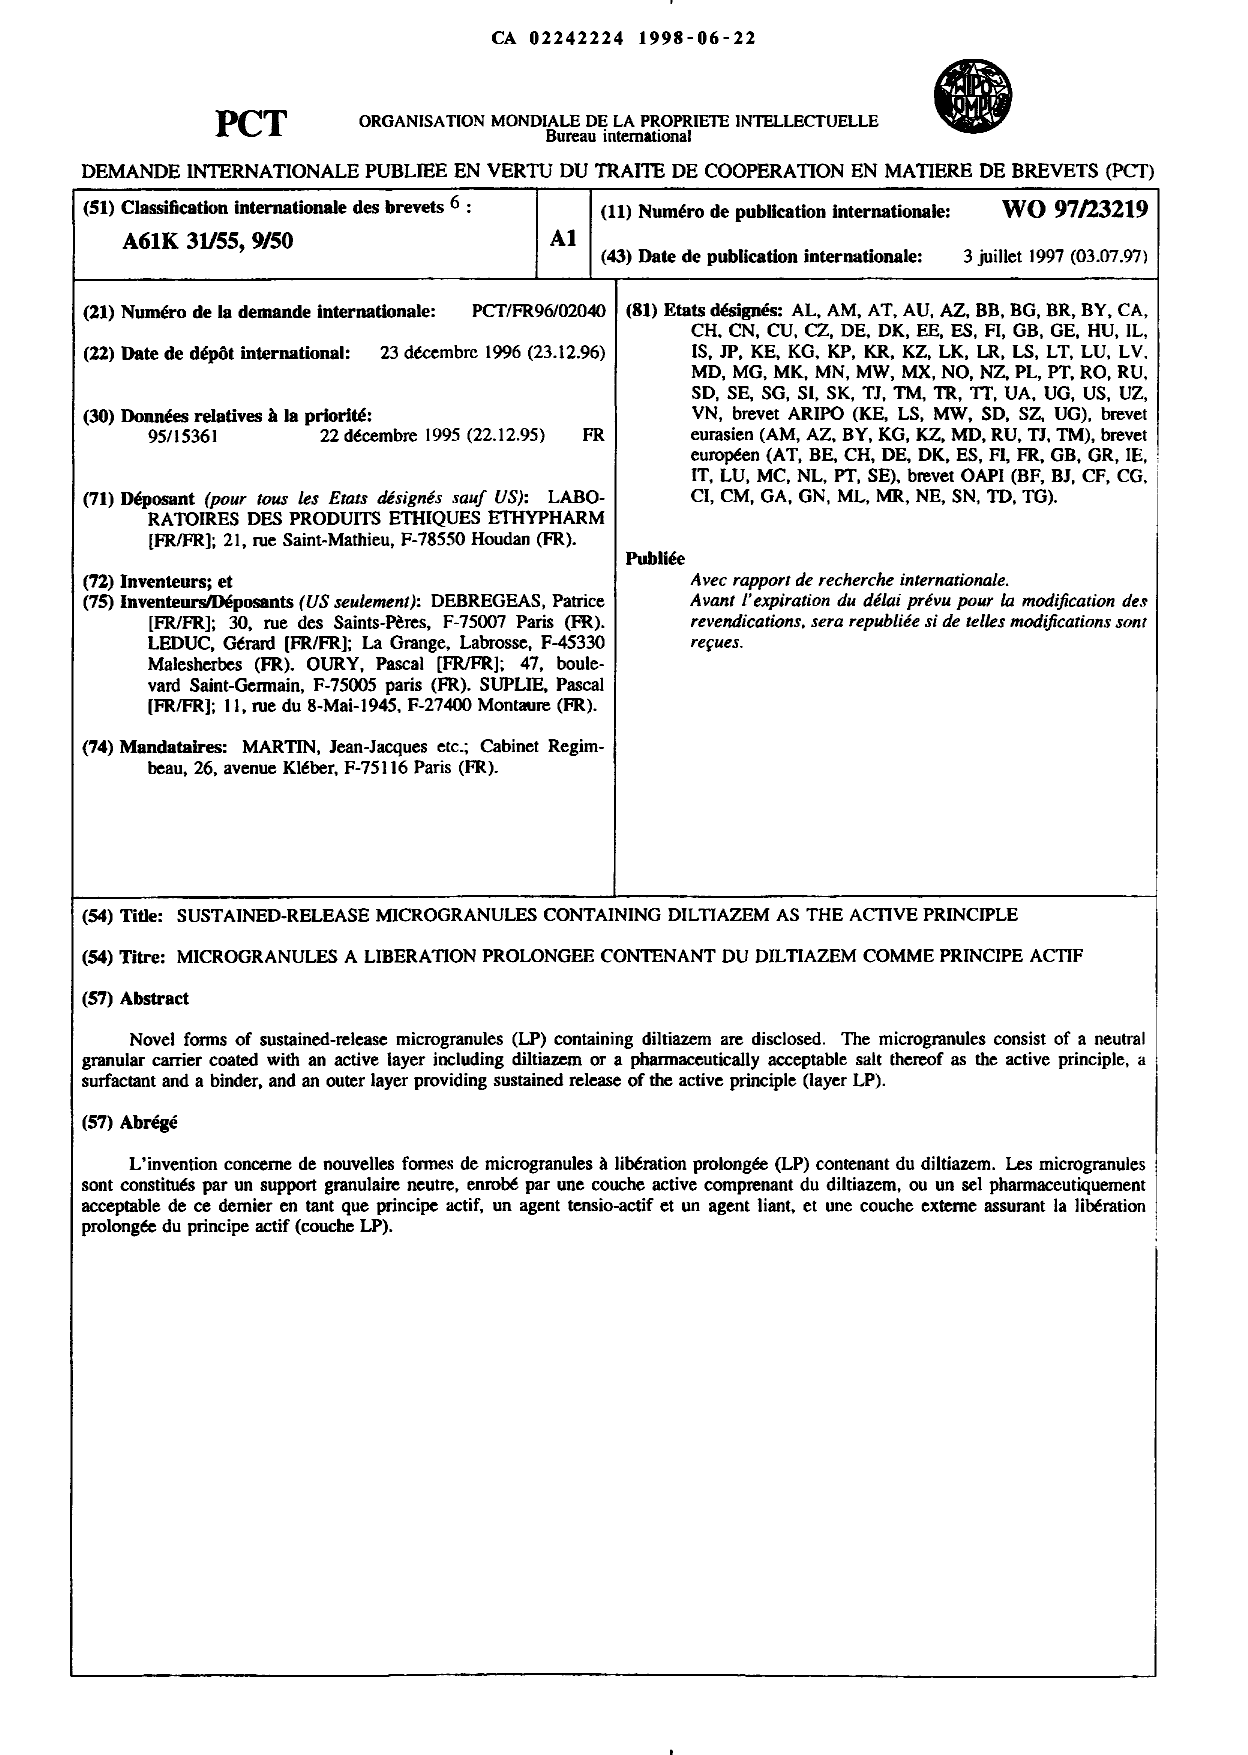 Document de brevet canadien 2242224. Abrégé 20021203. Image 1 de 1